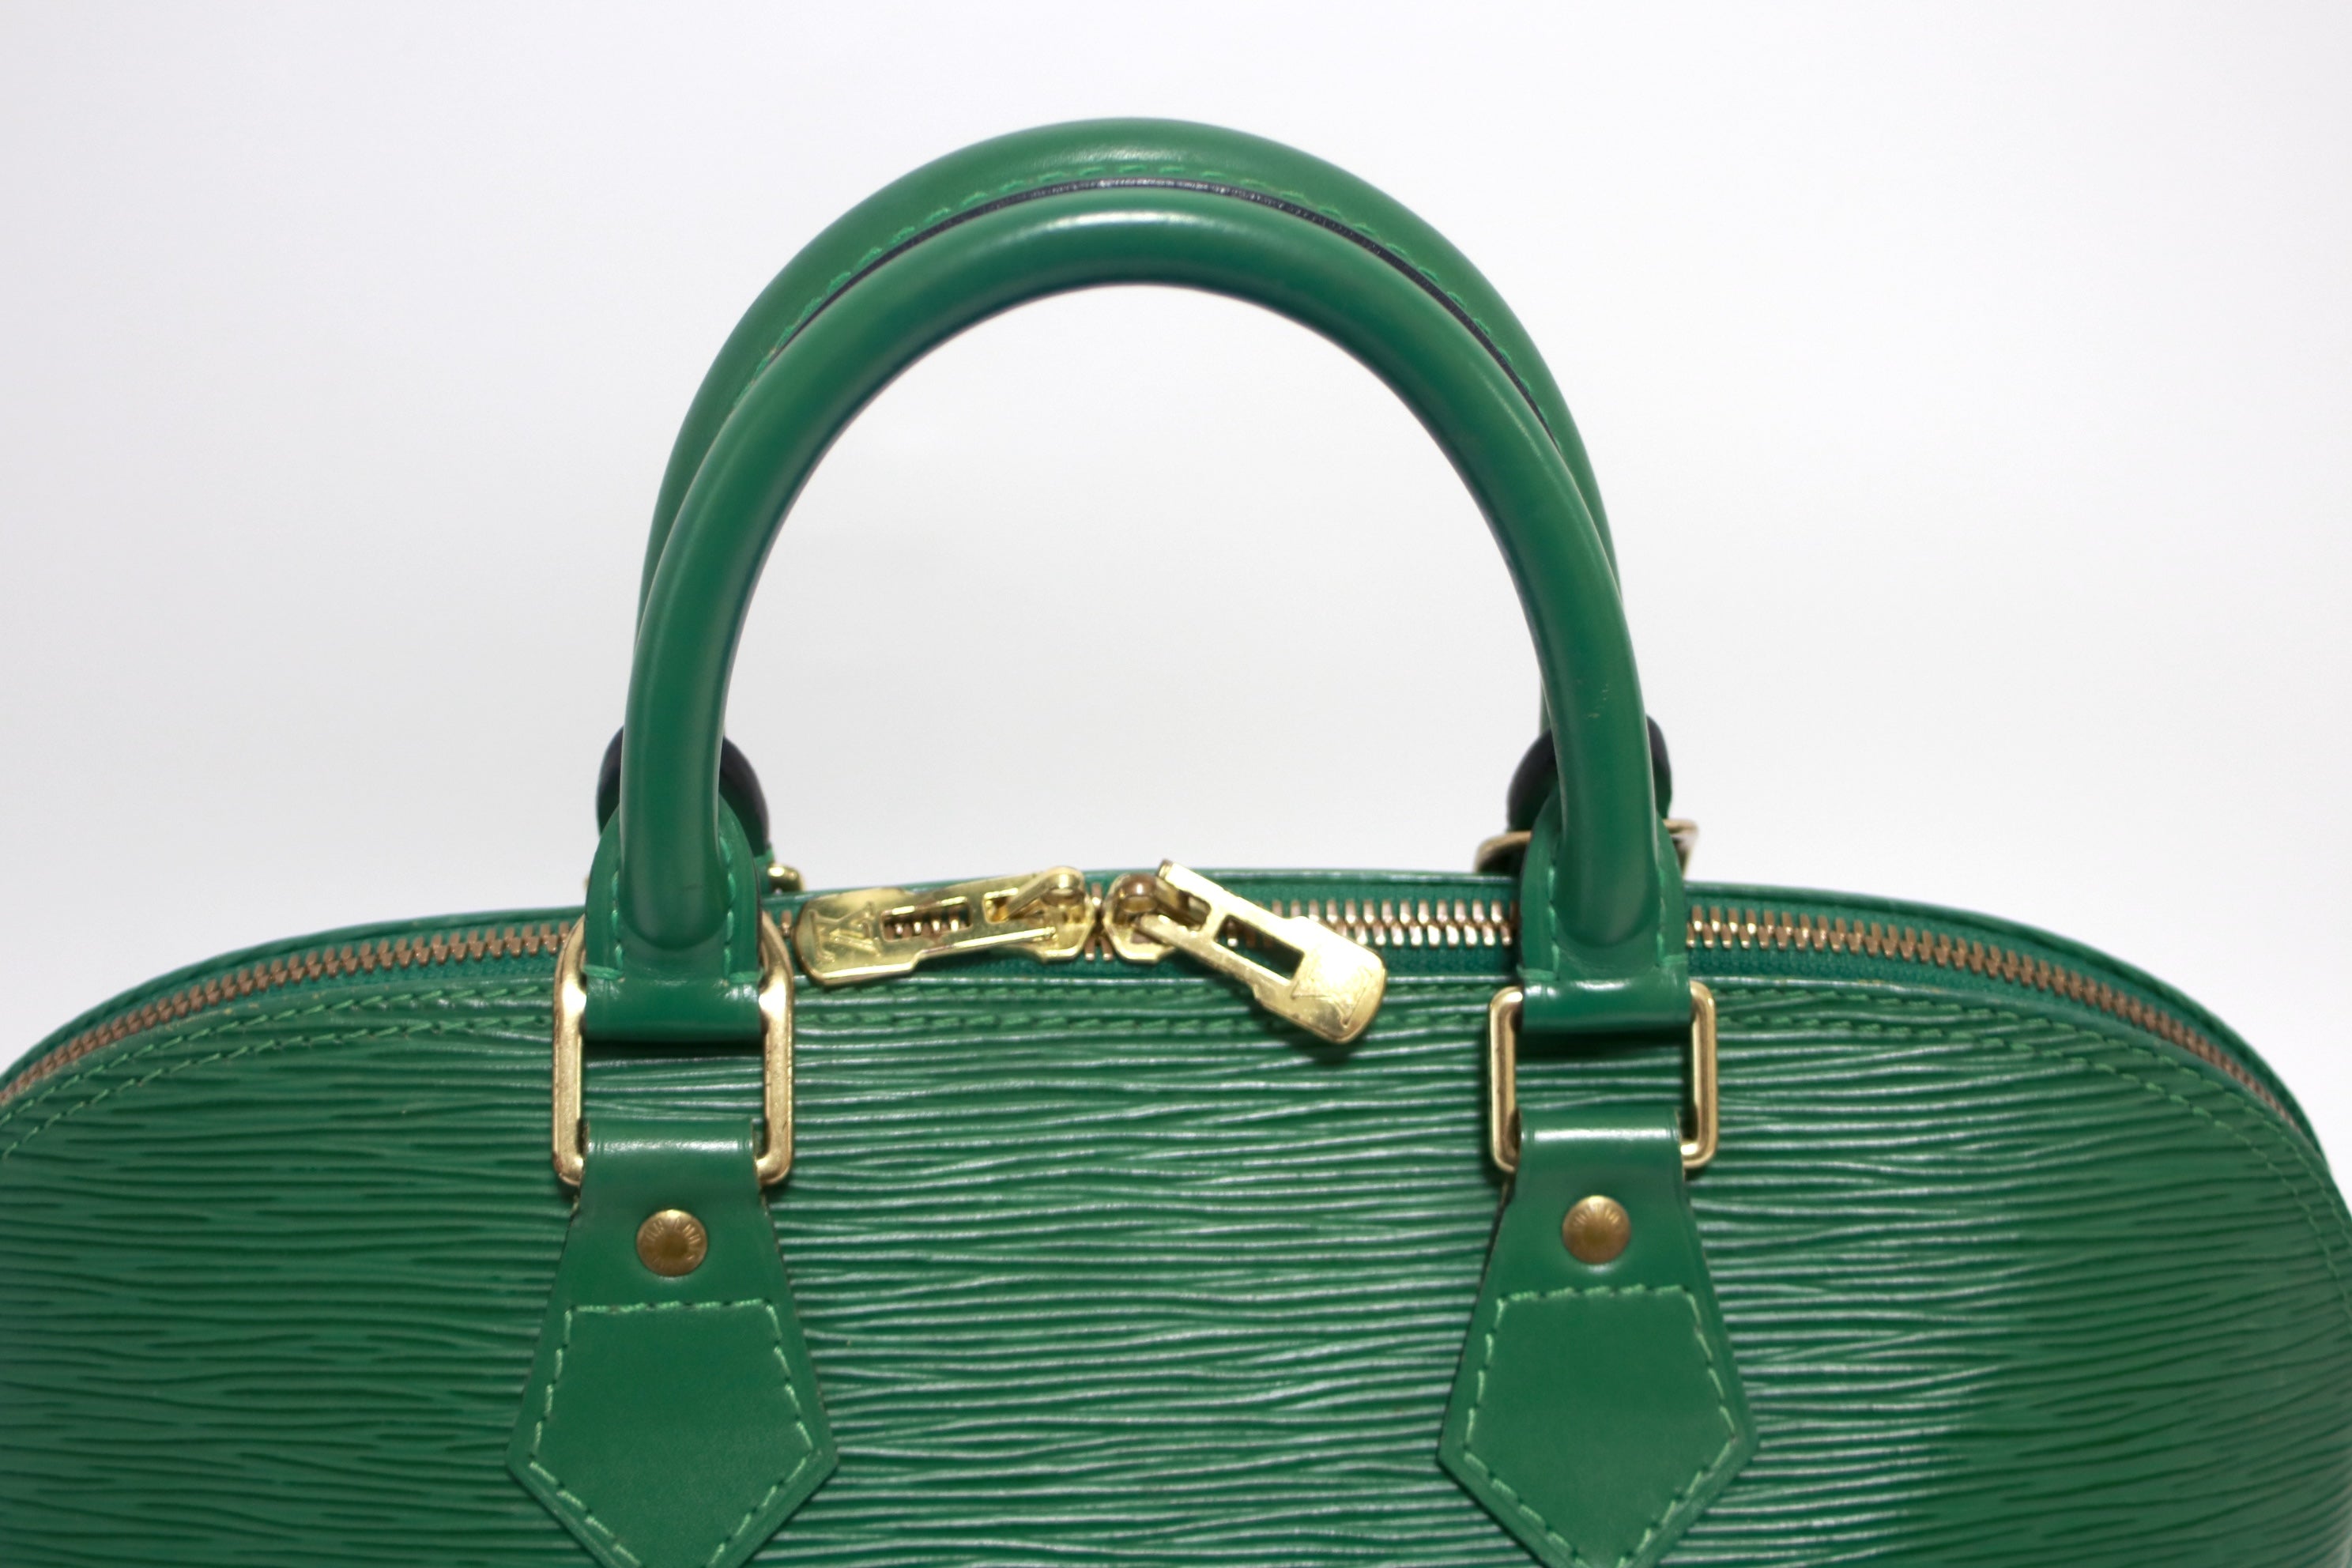 Louis Vuitton Alma Pm Epi Green Used (8765)